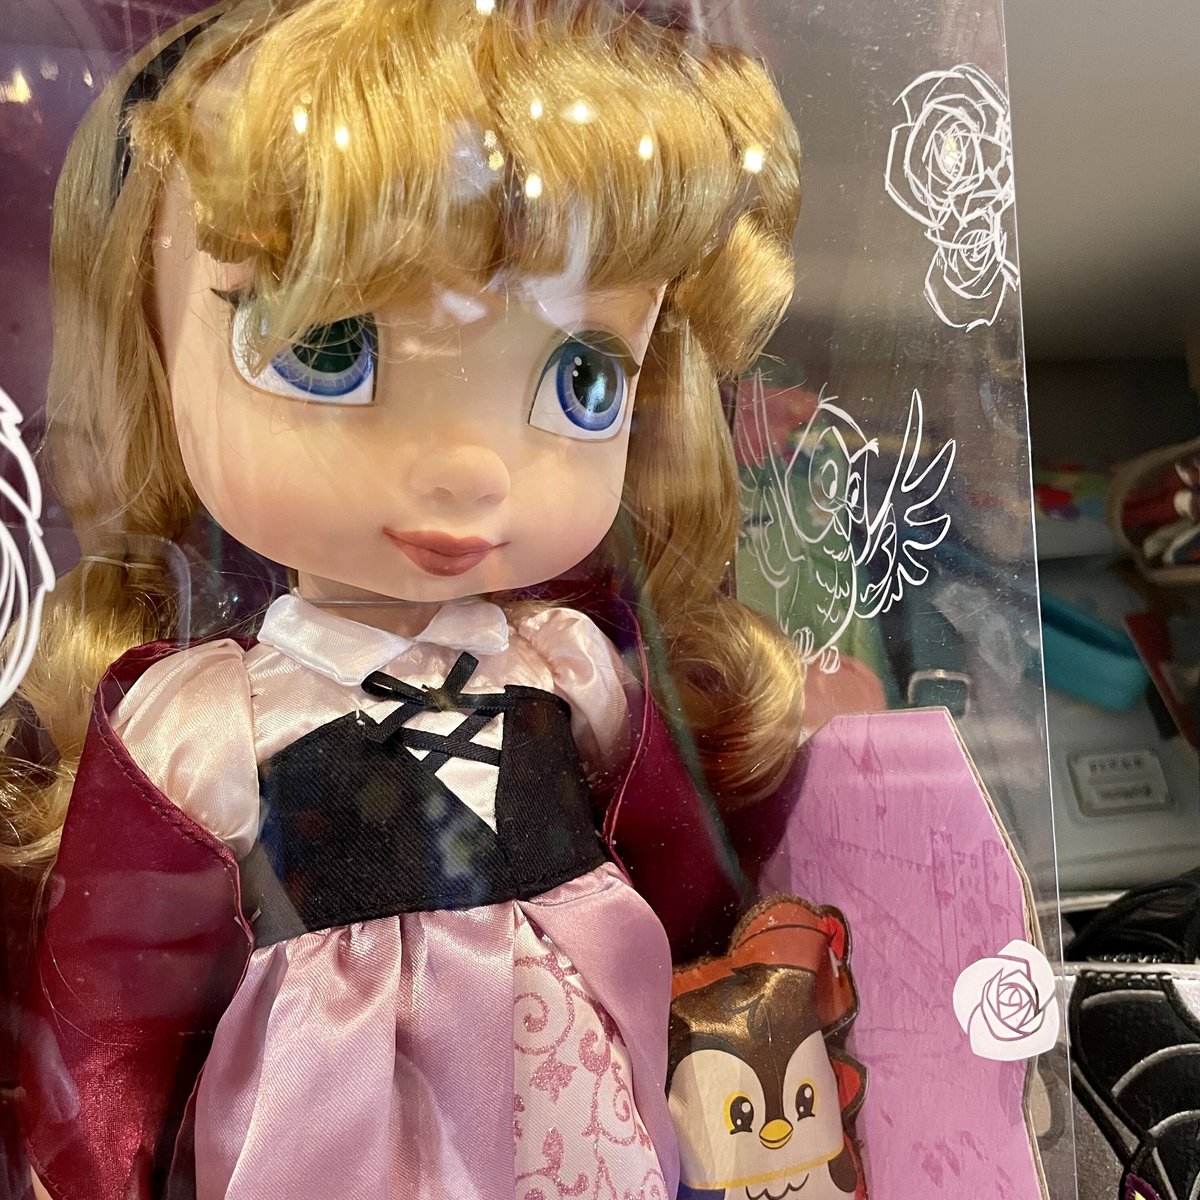 ディズニー(Disney)US公式商品 眠れる森の美女 オーロラ姫 プリンセス